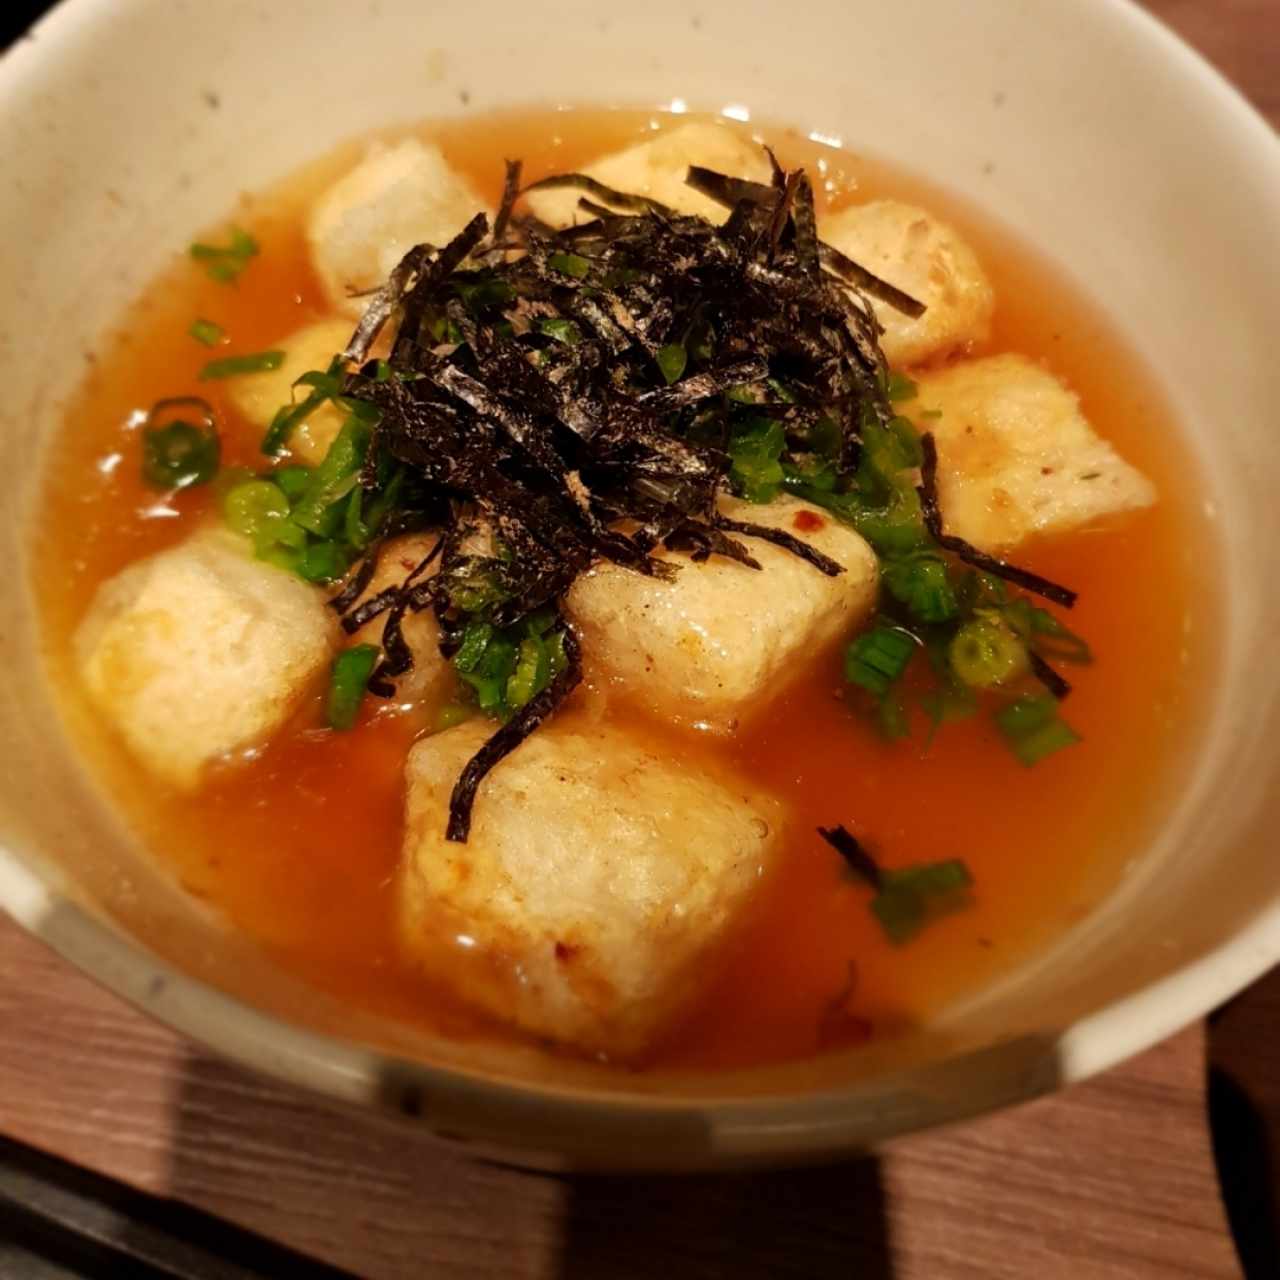 Entradas calientes - Agedashi tofu